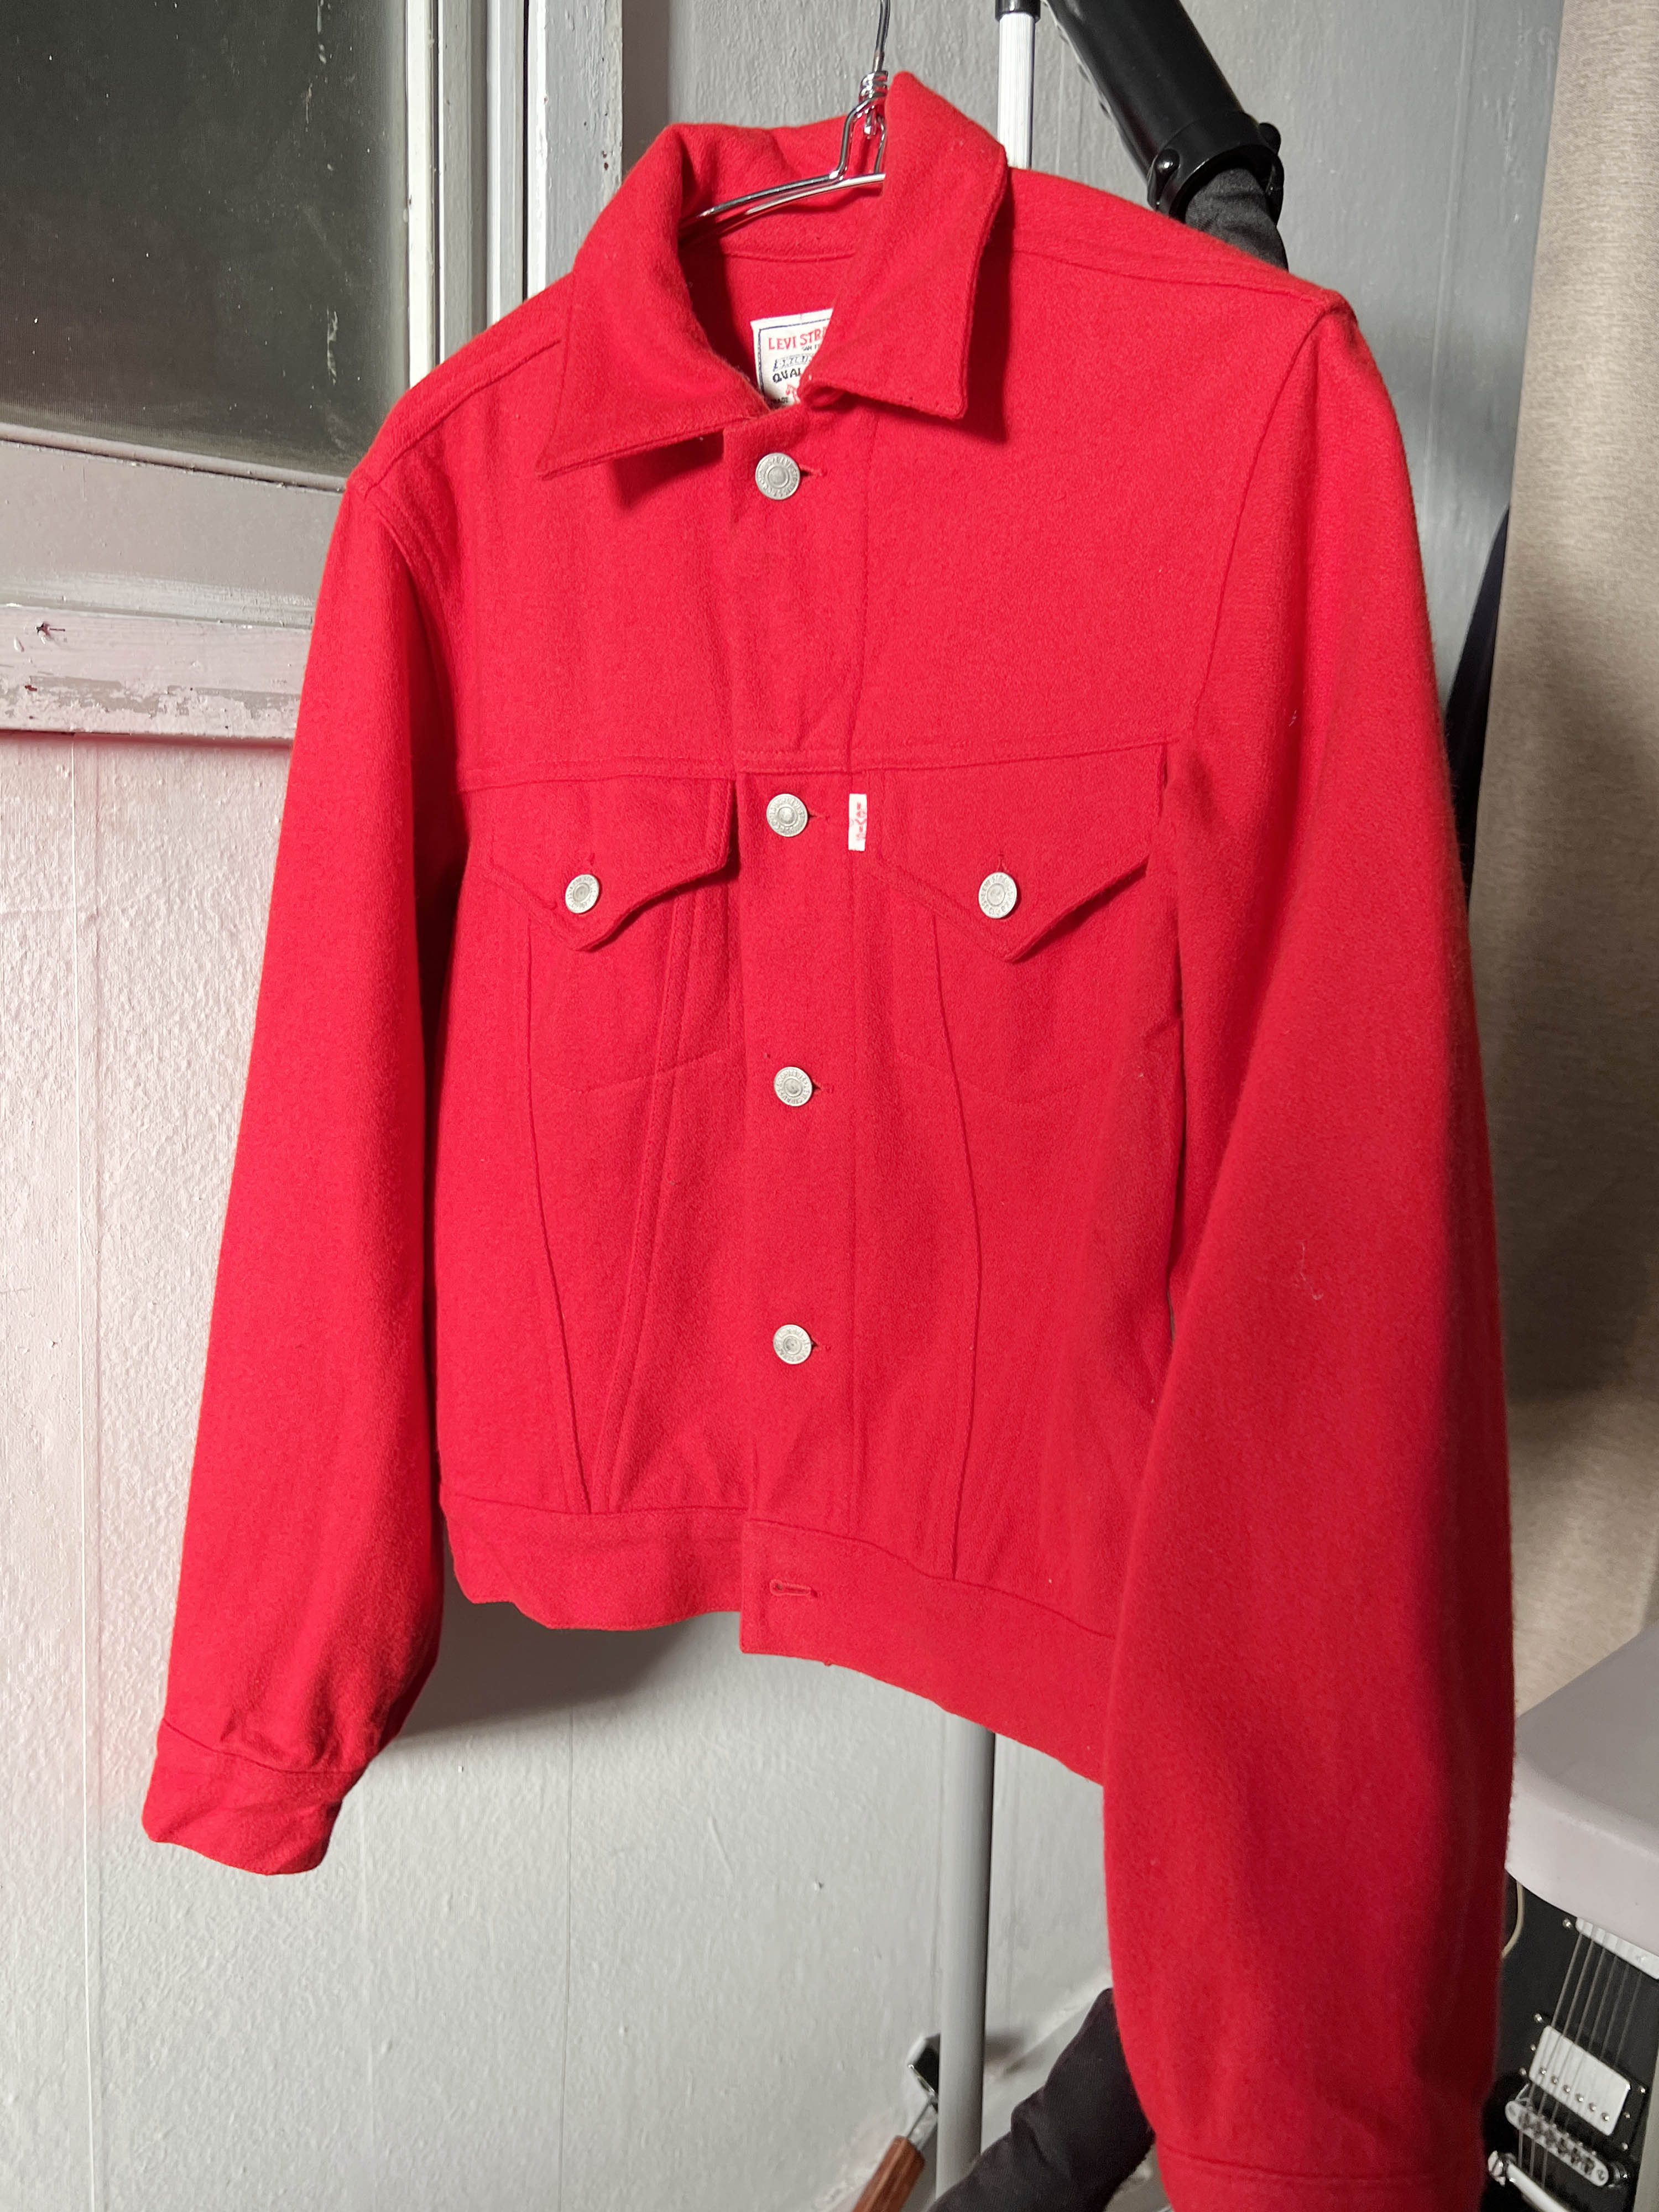 Levis red wool trucker jacket